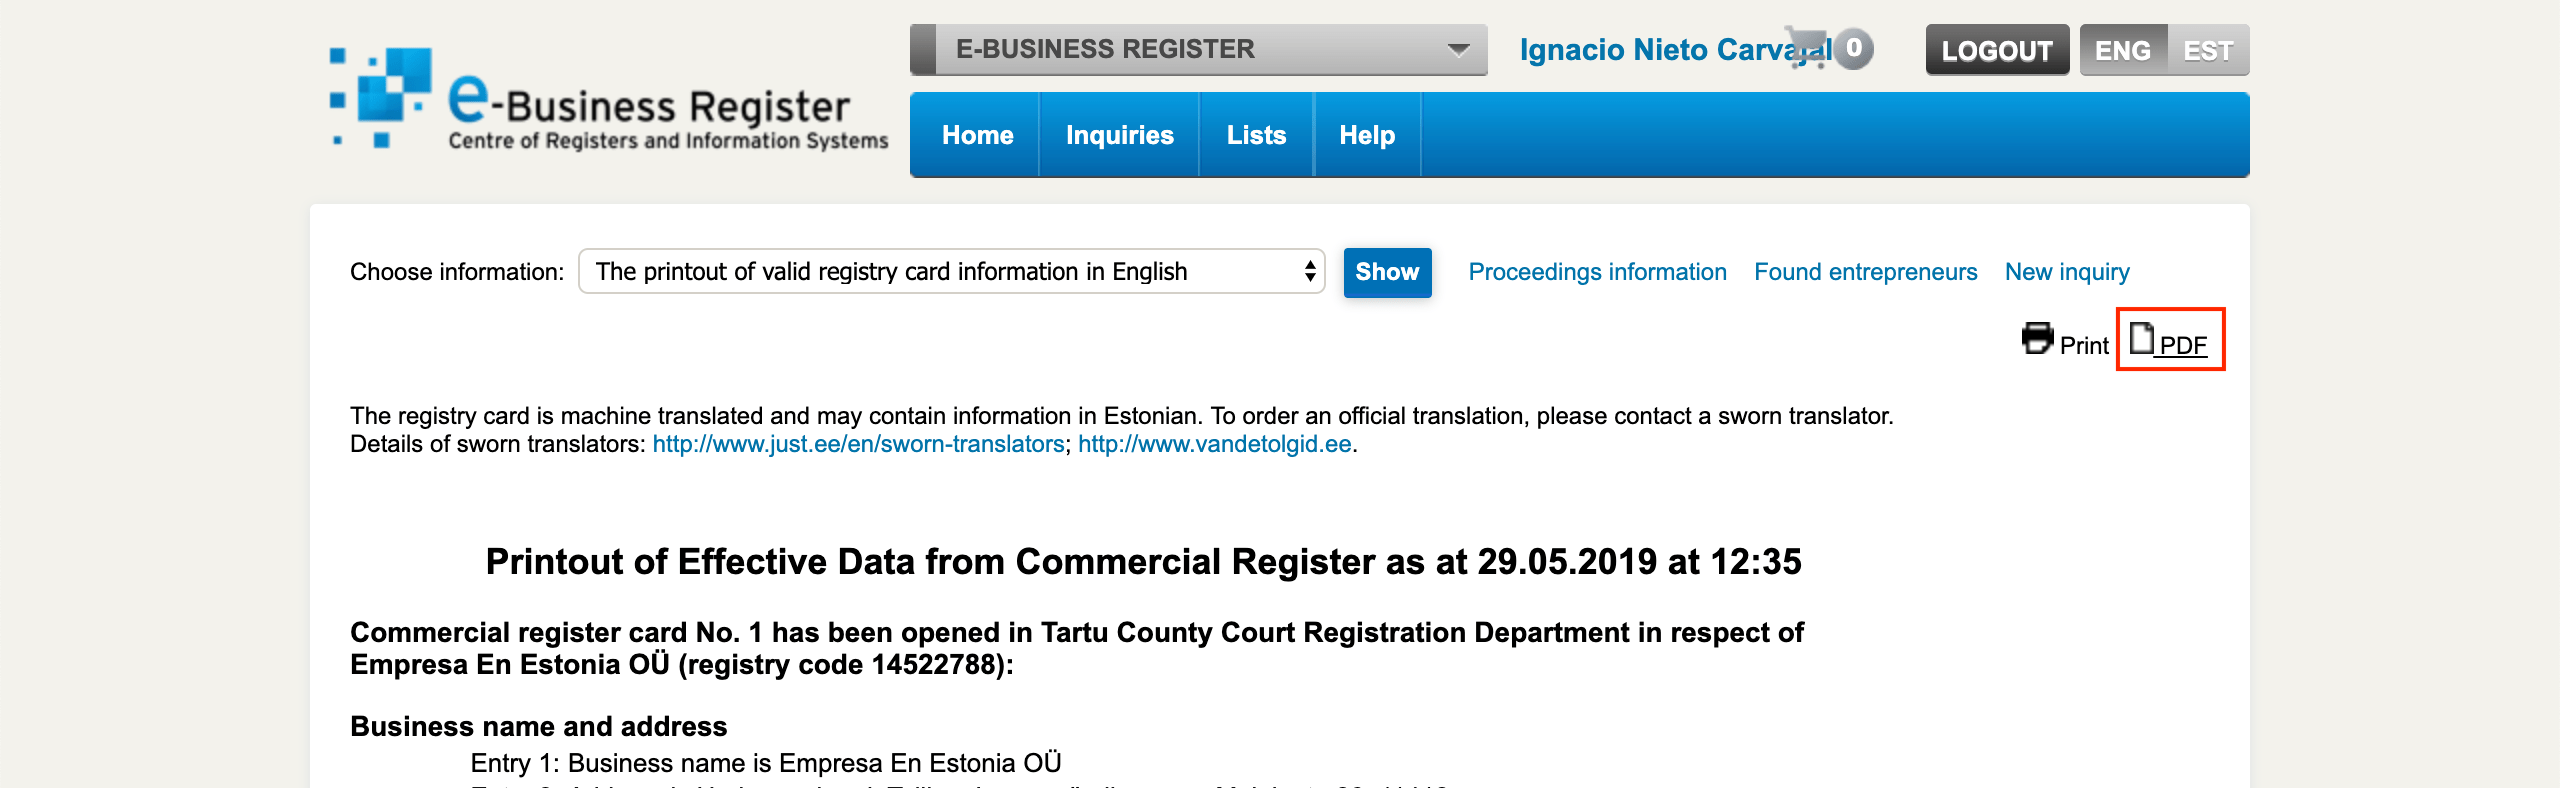 Cómo Descargar La Entrada En El Registro Y Los Artículos De Asociación De Tu Empresa En Estonia